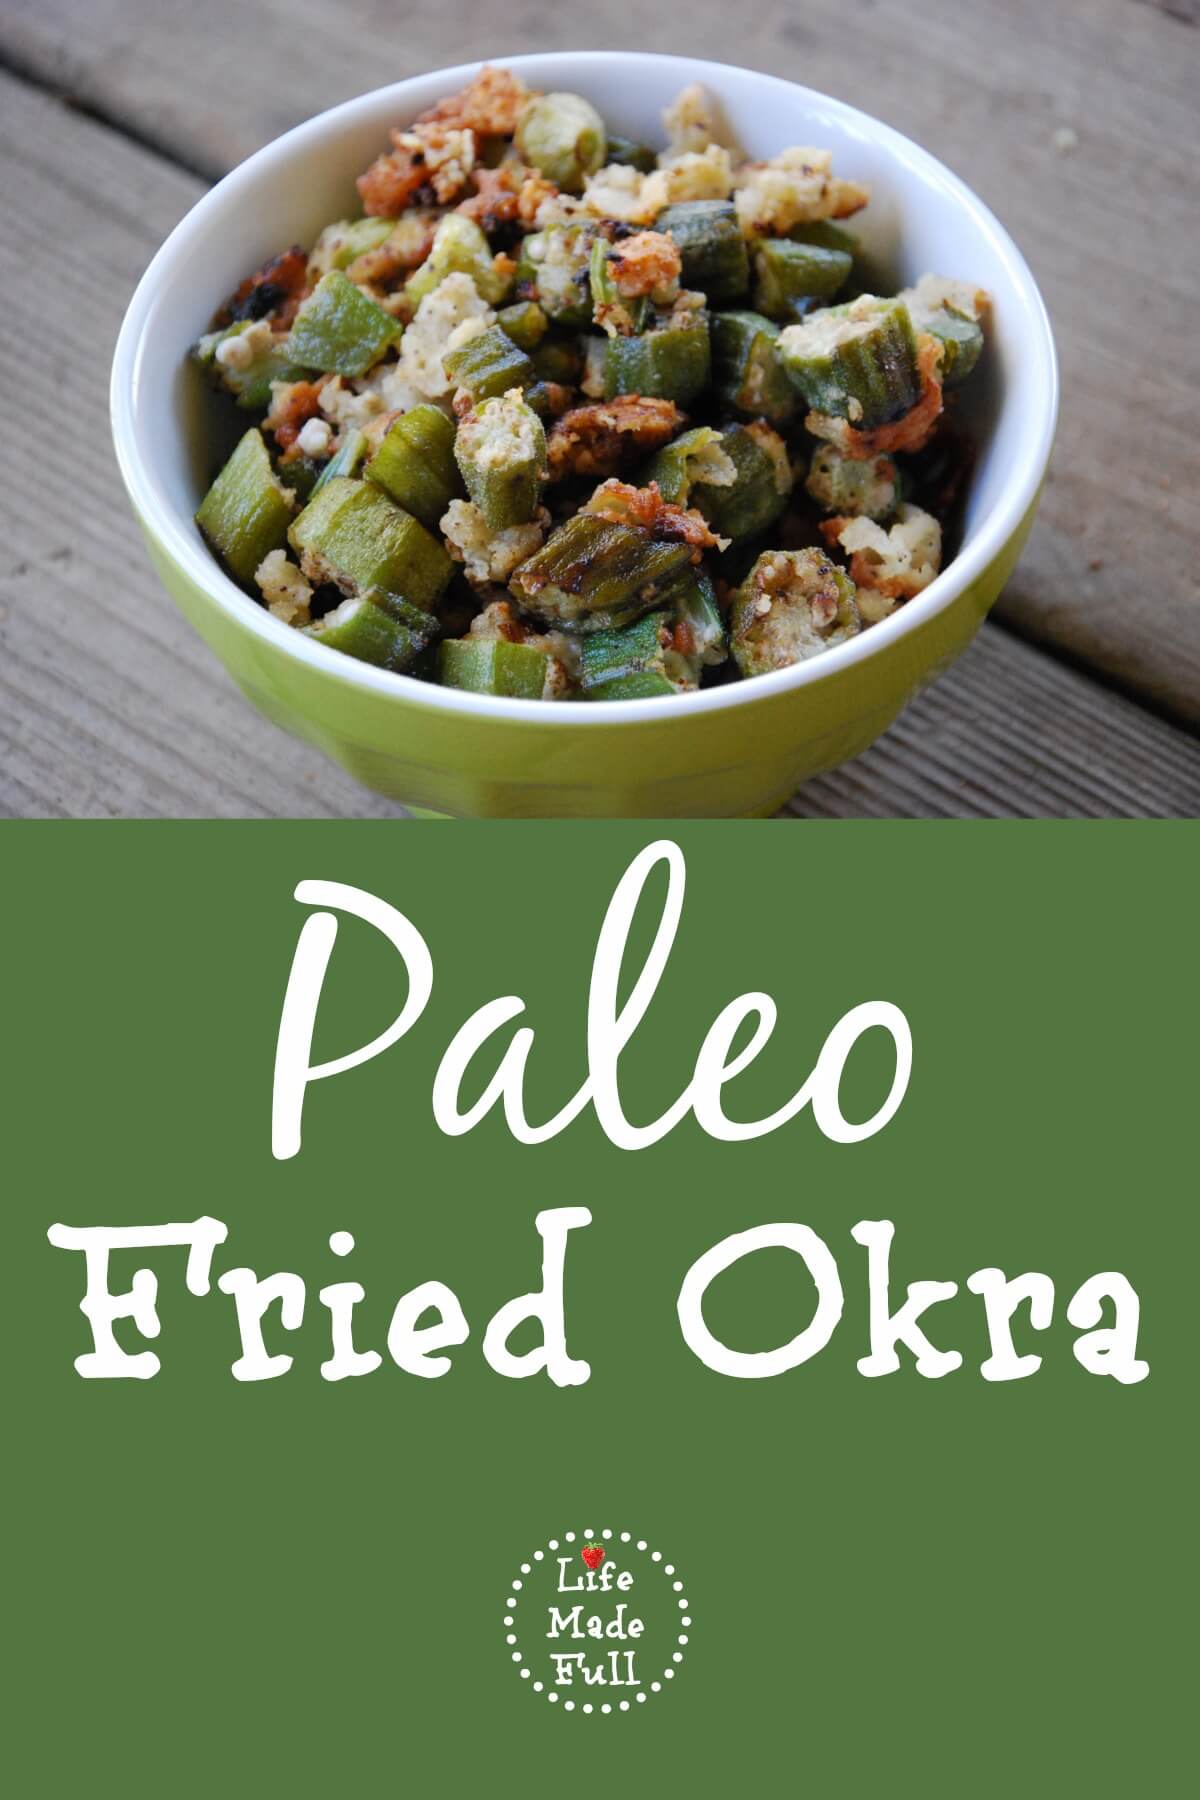 Paleo Fried Okra